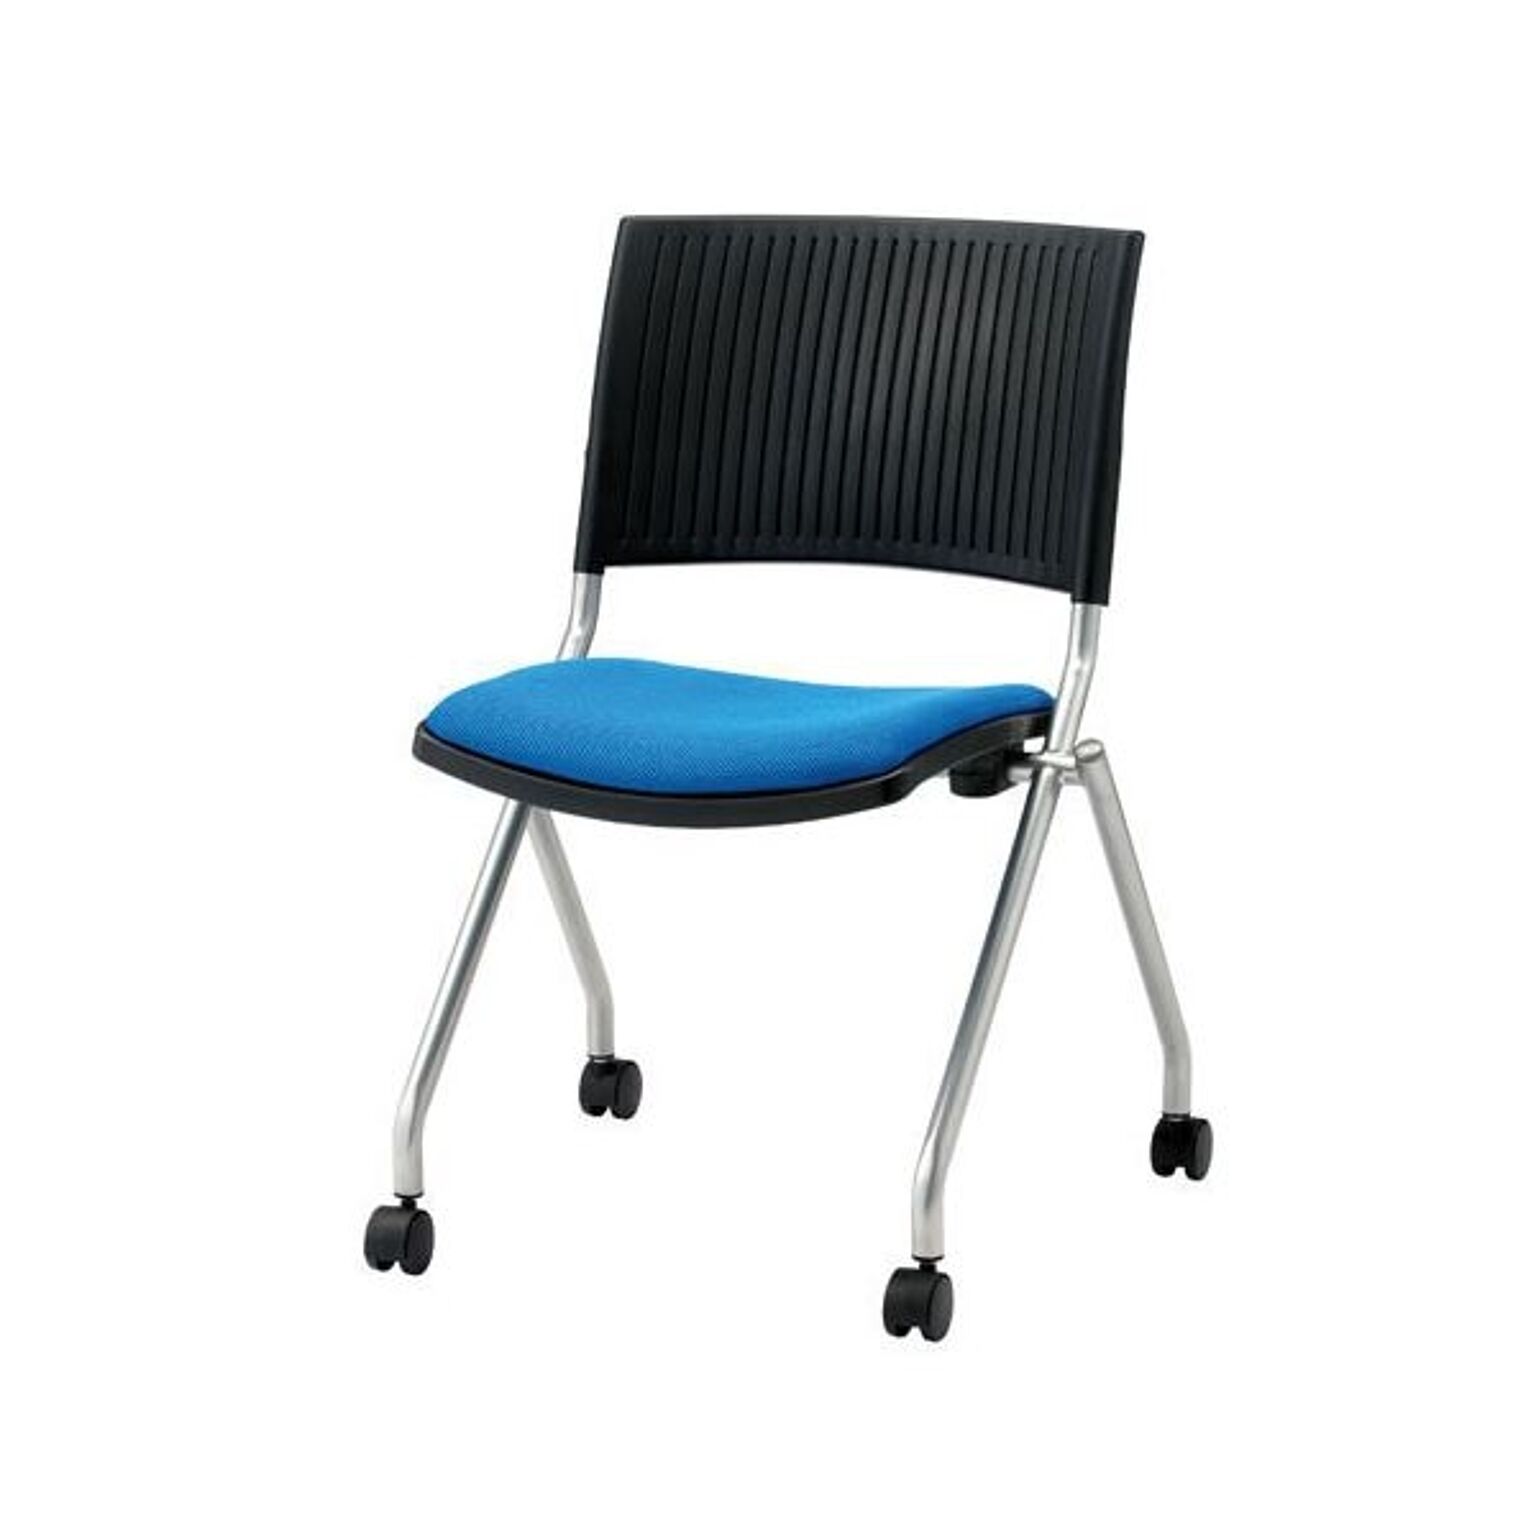 ジョインテックス 会議椅子(スタッキングチェア/ミーティングチェア) 肘なし キャスター付き FJC-K5 ブルー 完成品